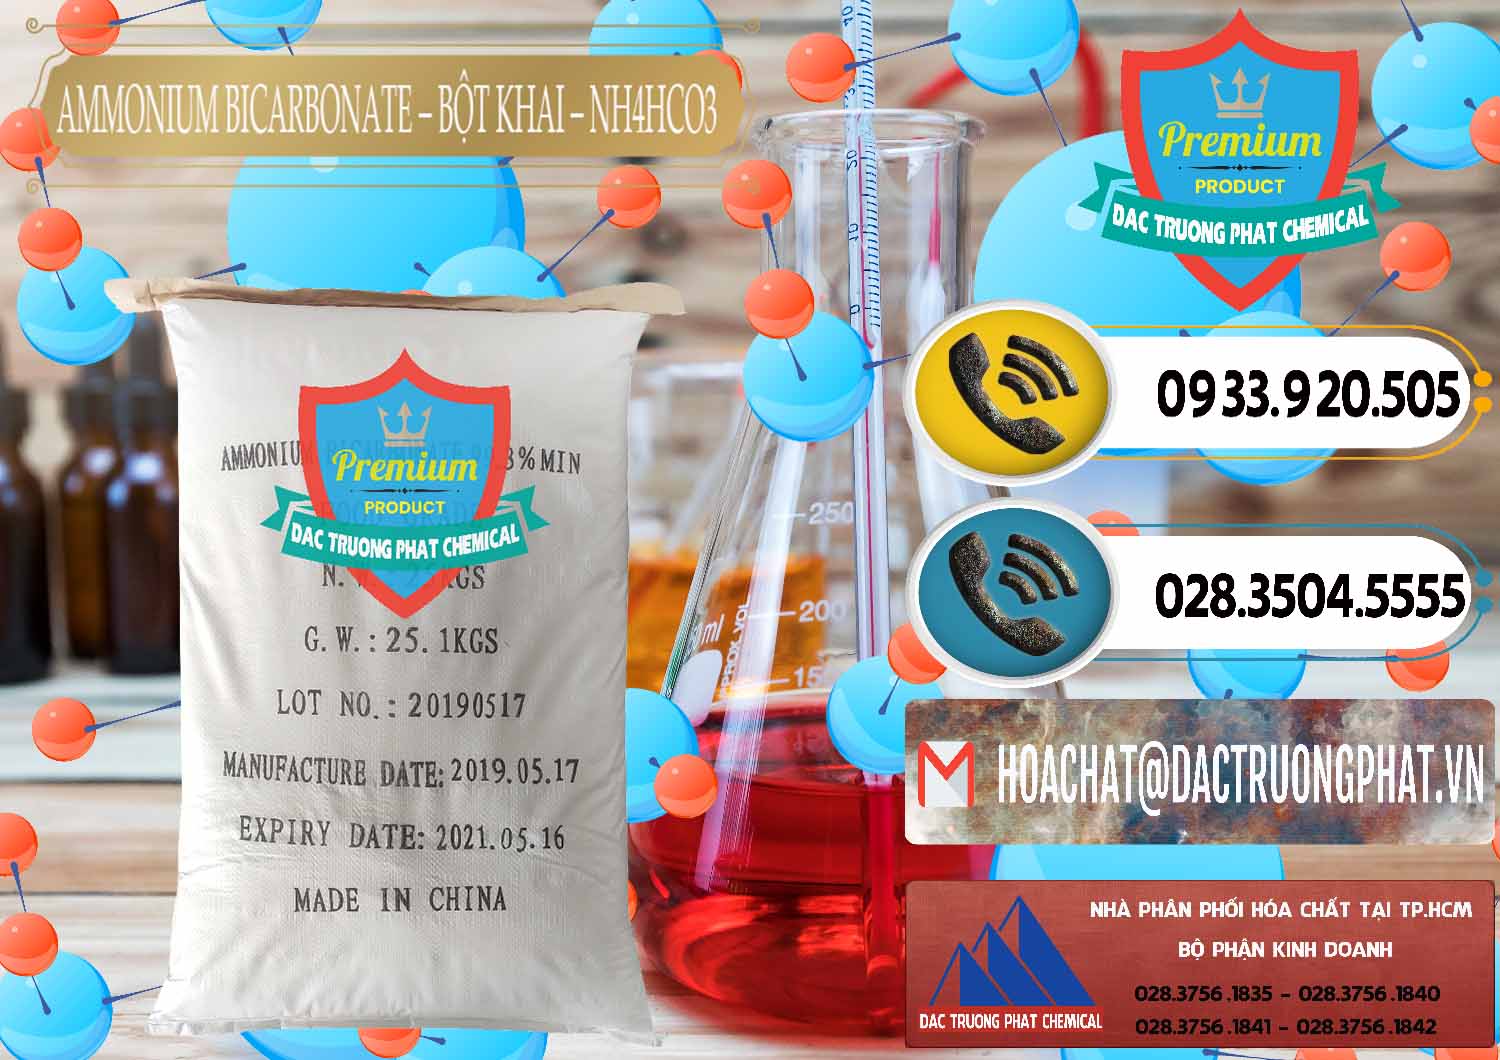 Nơi chuyên kinh doanh ( bán ) Ammonium Bicarbonate - Bột Khai Food Grade Trung Quốc China - 0018 - Cty nhập khẩu ( cung cấp ) hóa chất tại TP.HCM - hoachatdetnhuom.vn